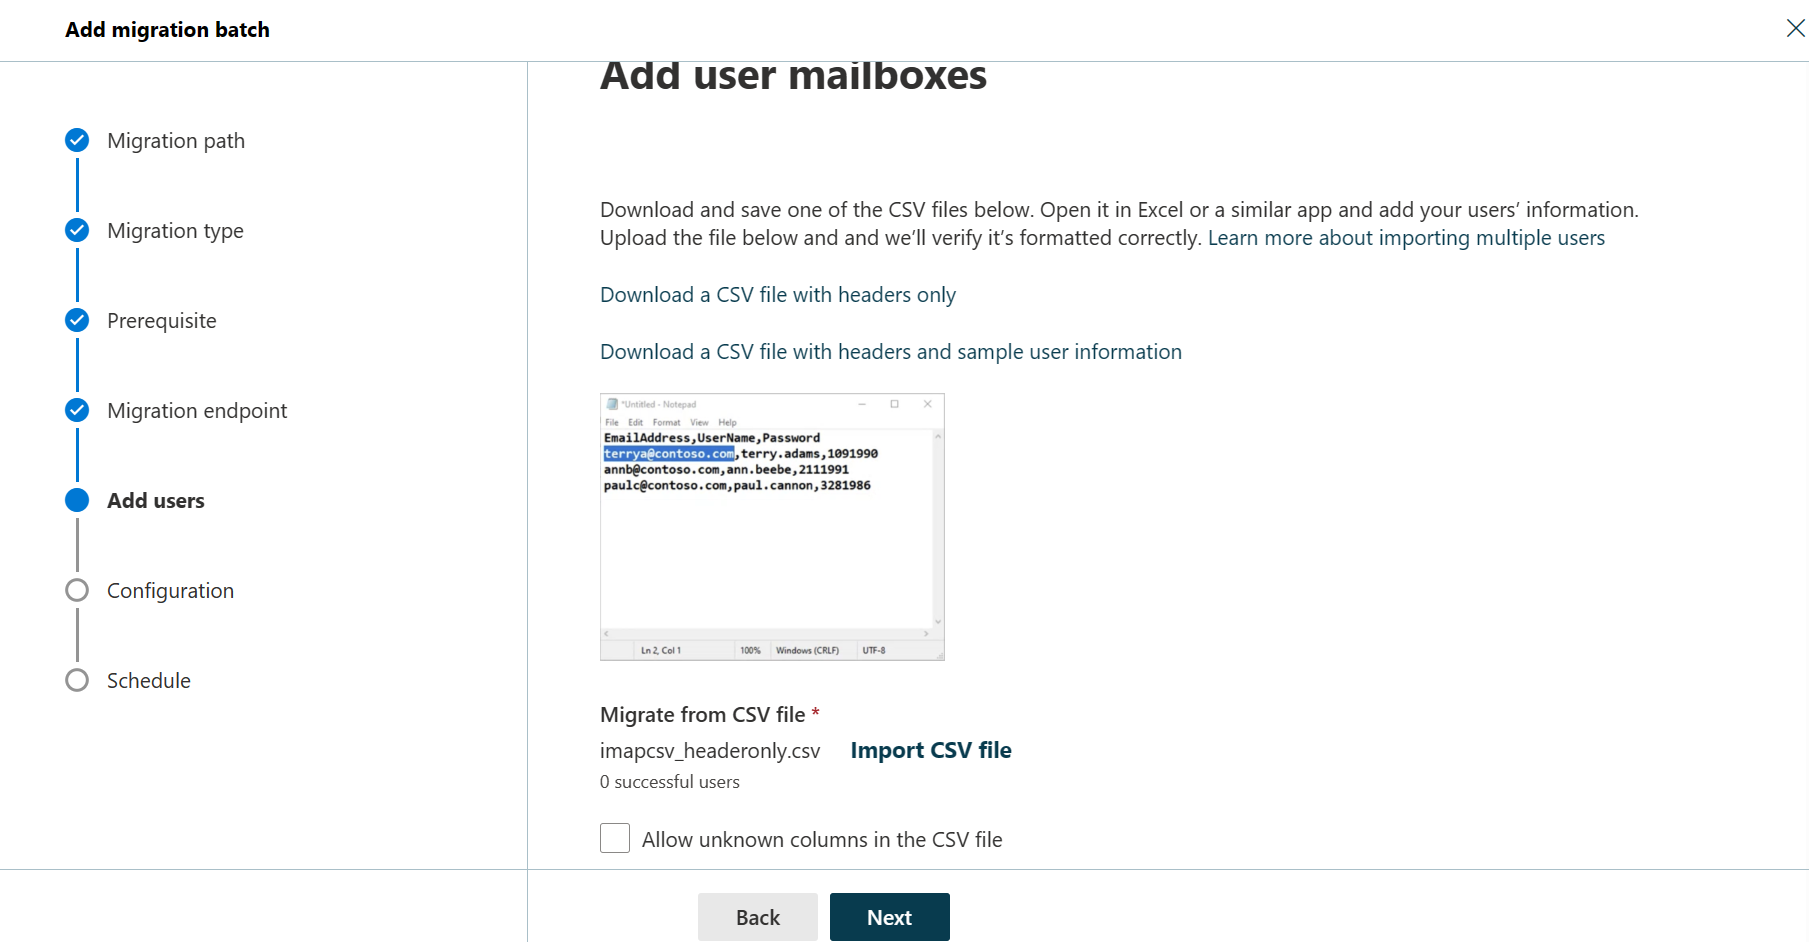 Captura de pantalla del quinto paso del Asistente para agregar lotes de migración donde el usuario puede agregar buzones de usuario.